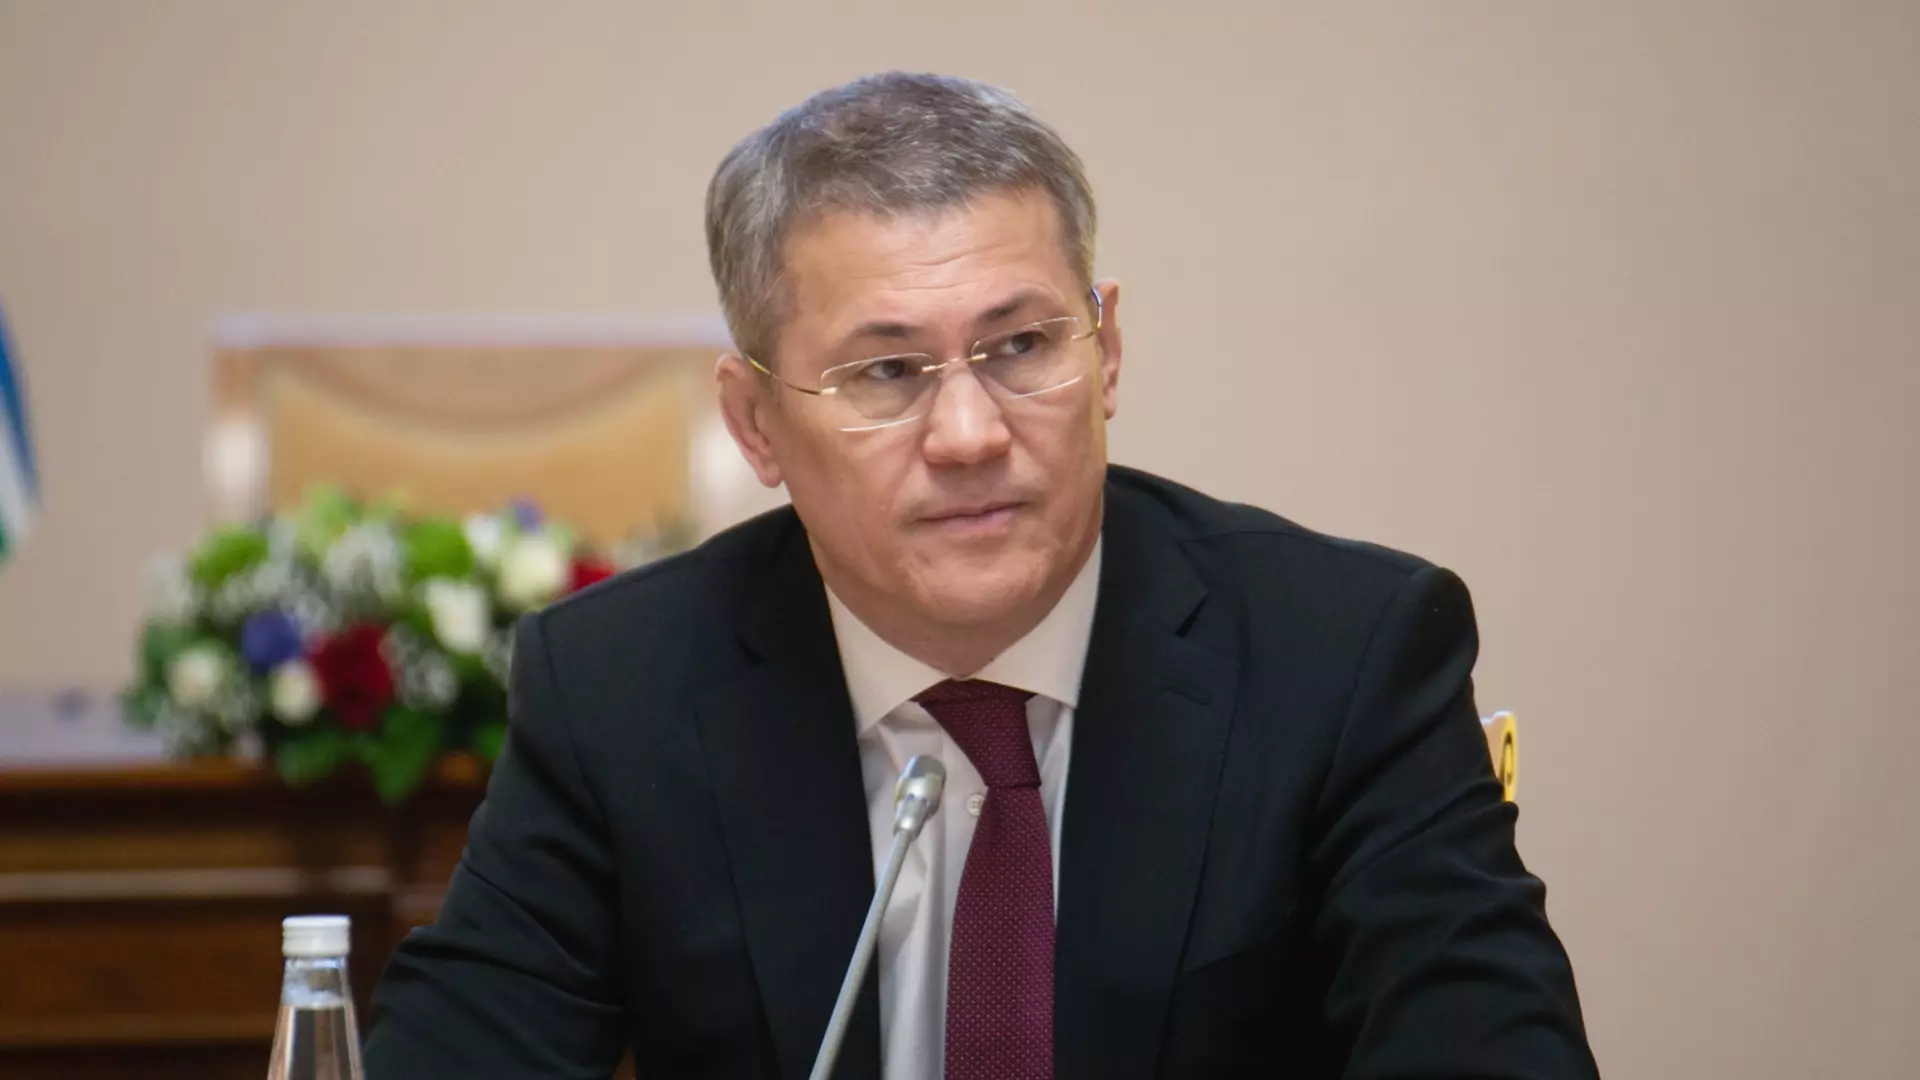 Радий Хабиров высказался о первом президенте республики Башкортостан